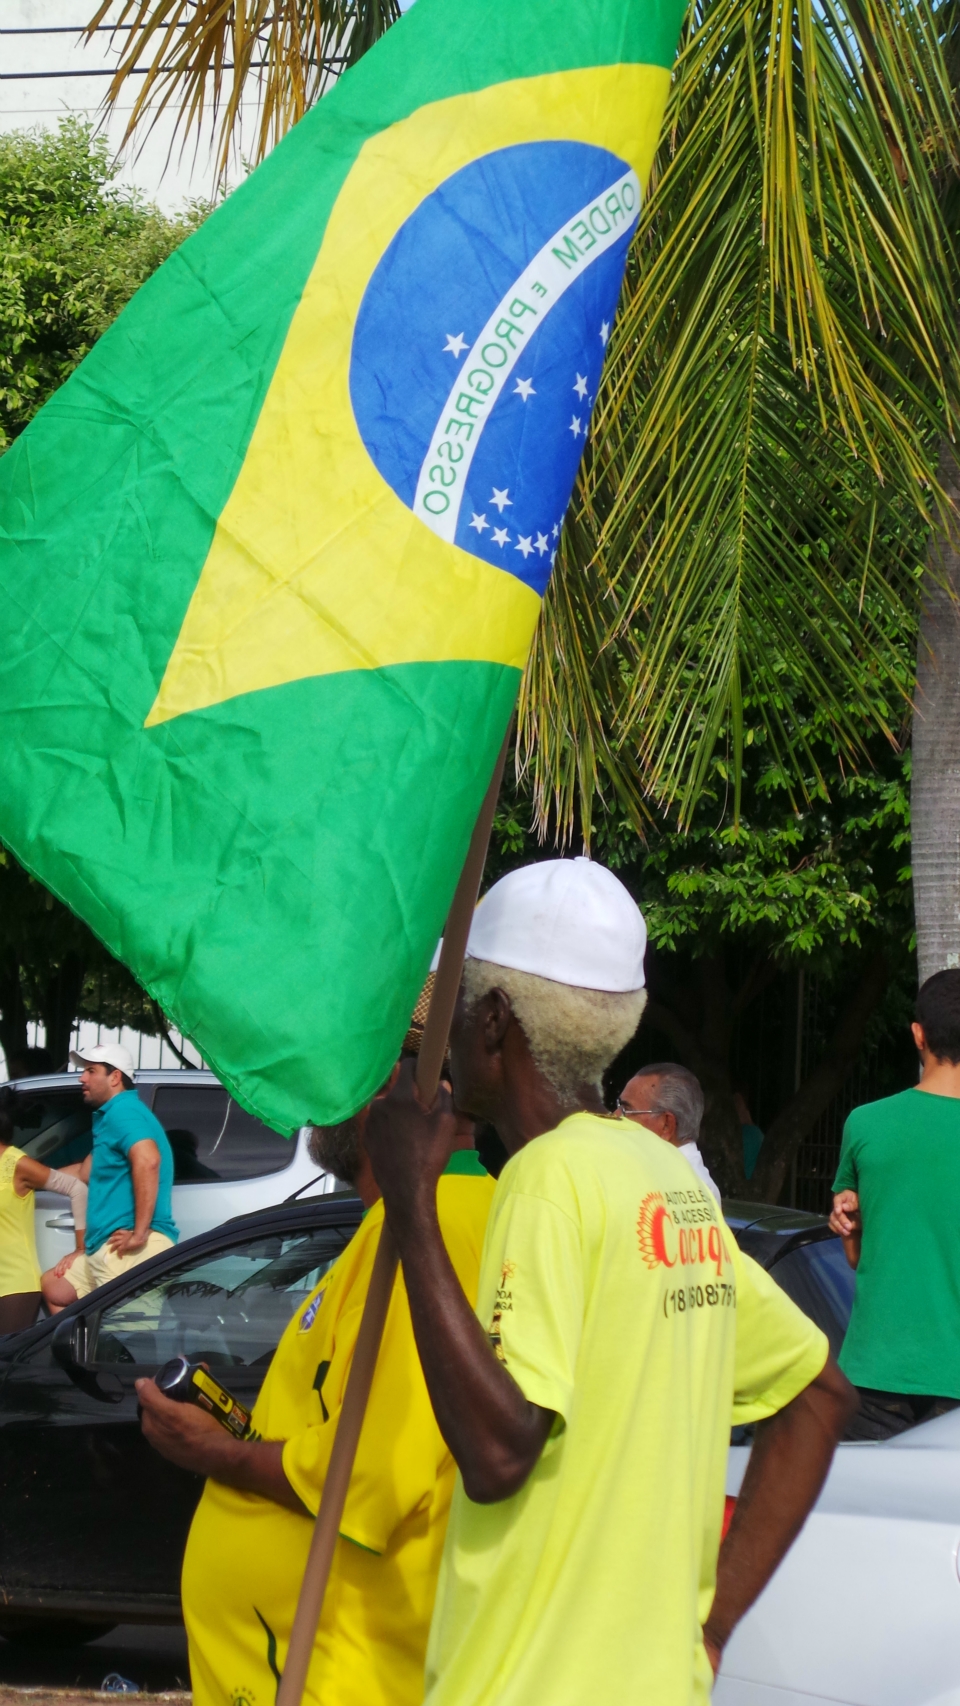 Três-lagoenses marcham na avenida em protesto contra a corrupção